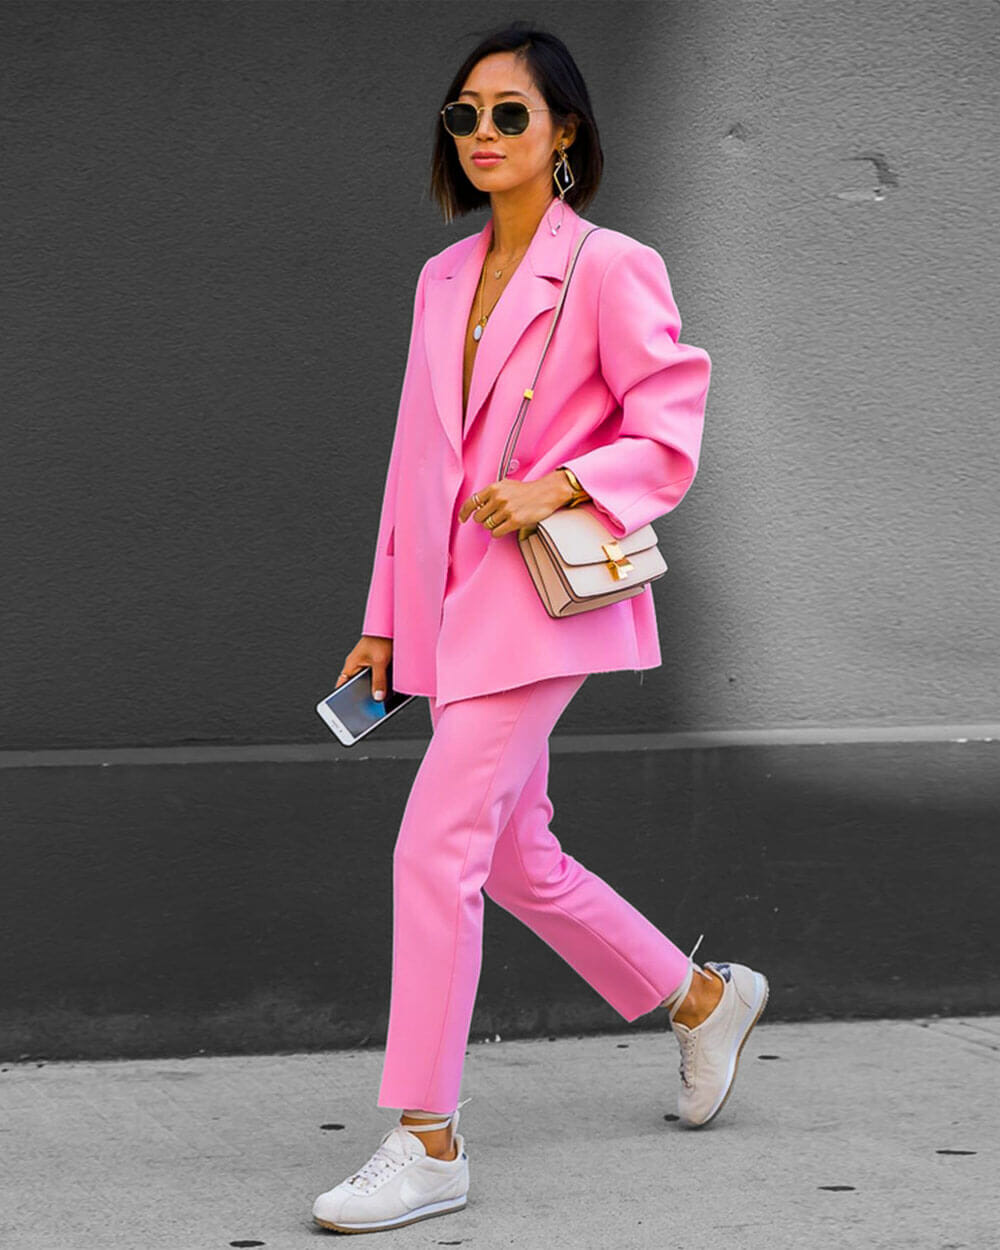 Bubblegum Pink fashion trend 2022